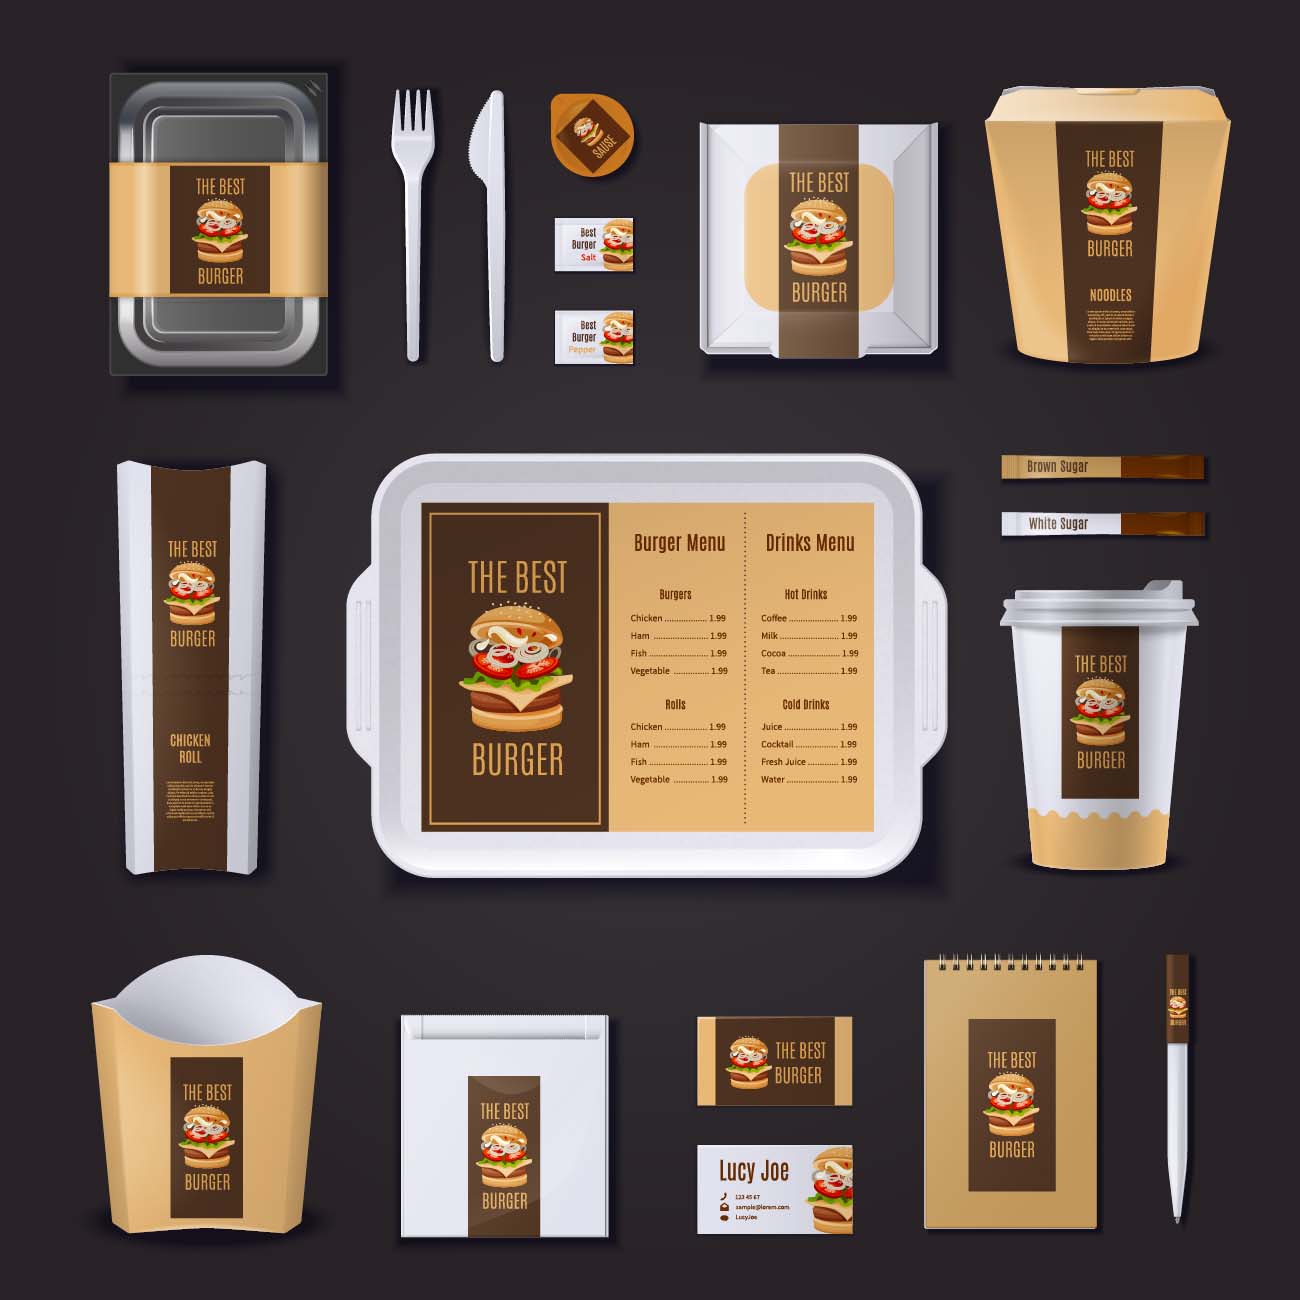 汉堡酒吧包装文具和名片的企业形象免费矢量-burger-bar-corporate-identity-packaging-stationery-business-